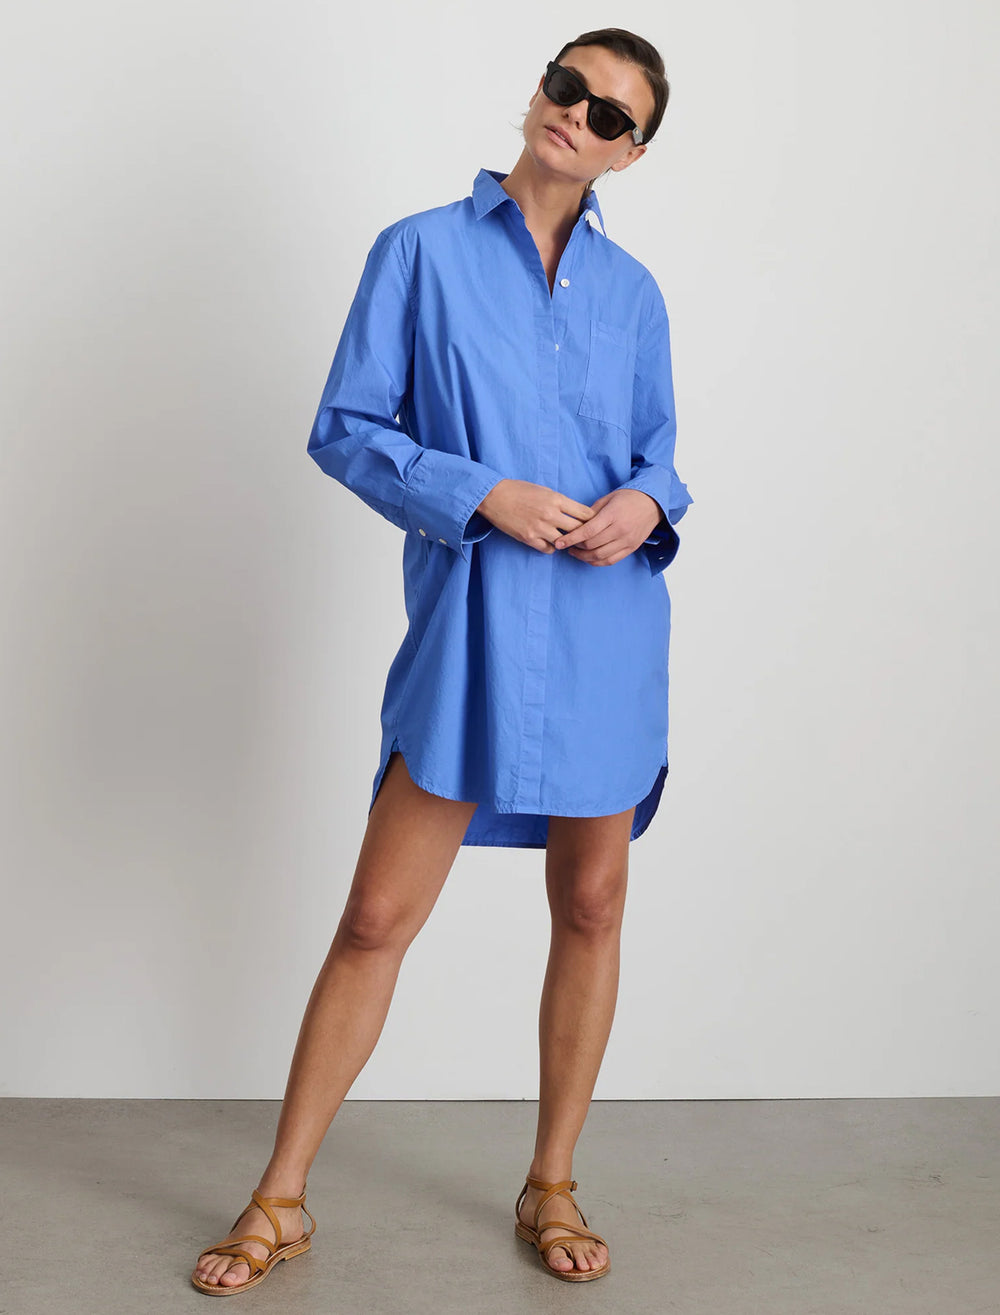 Model wearing Alex Mill's belle shirt dress in french blue paper poplin.